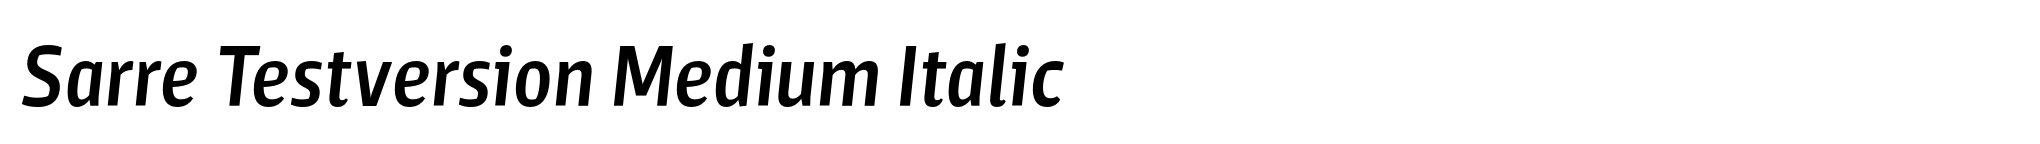 Sarre Testversion Medium Italic image